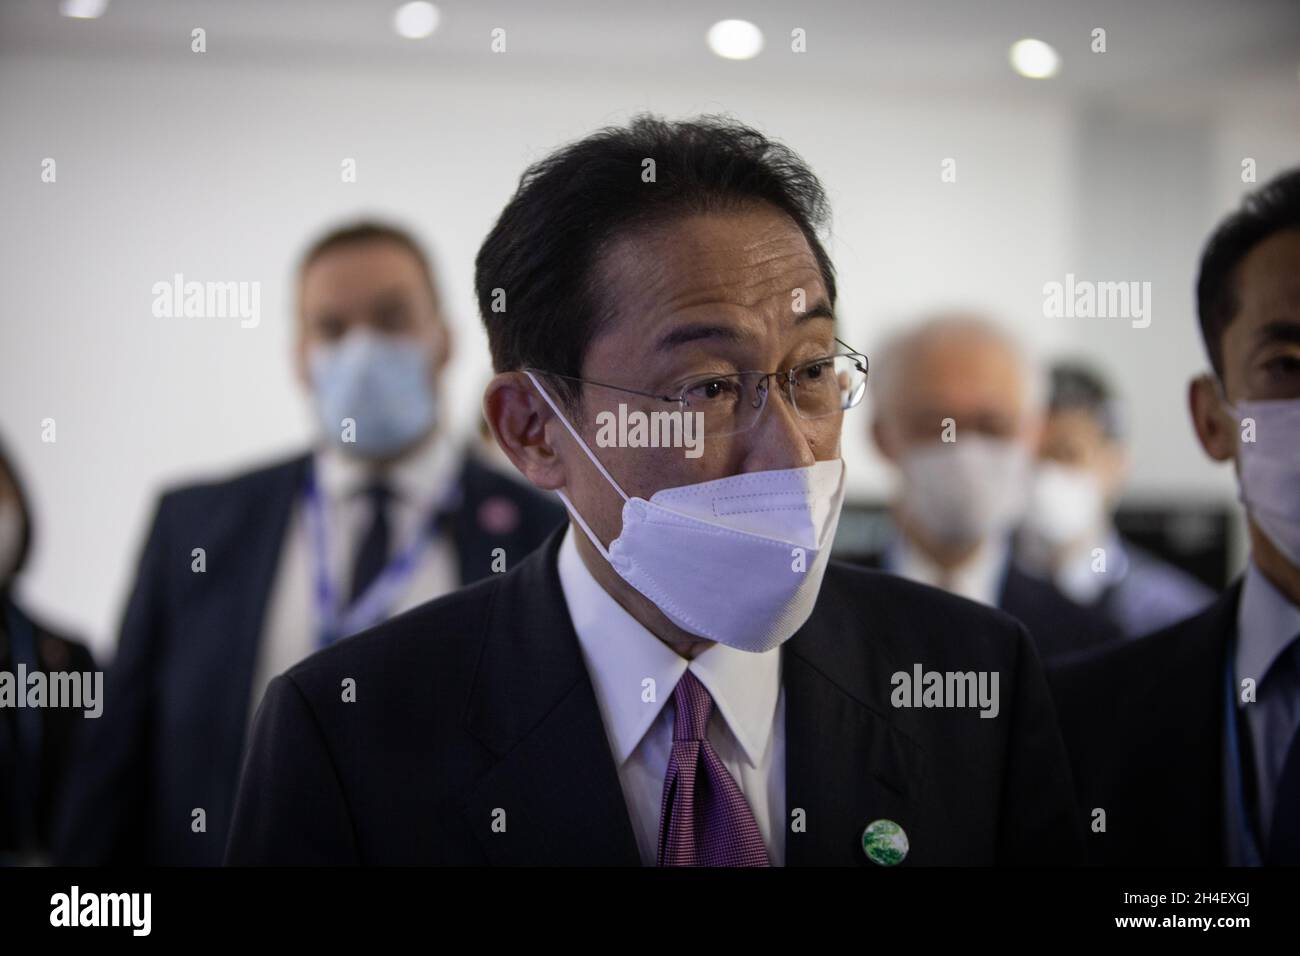 Glasgow, Großbritannien. Der japanische Premierminister Fumio Kishida nimmt am 2. November 2021 am Japan Pavilion in der Blauen Zone der 26. UN-Klimakonferenz, bekannt als COP26, in Glasgow, Großbritannien, Teil. Foto: Jeremy Sutton-Hibbert/Alamy Live News. Stockfoto